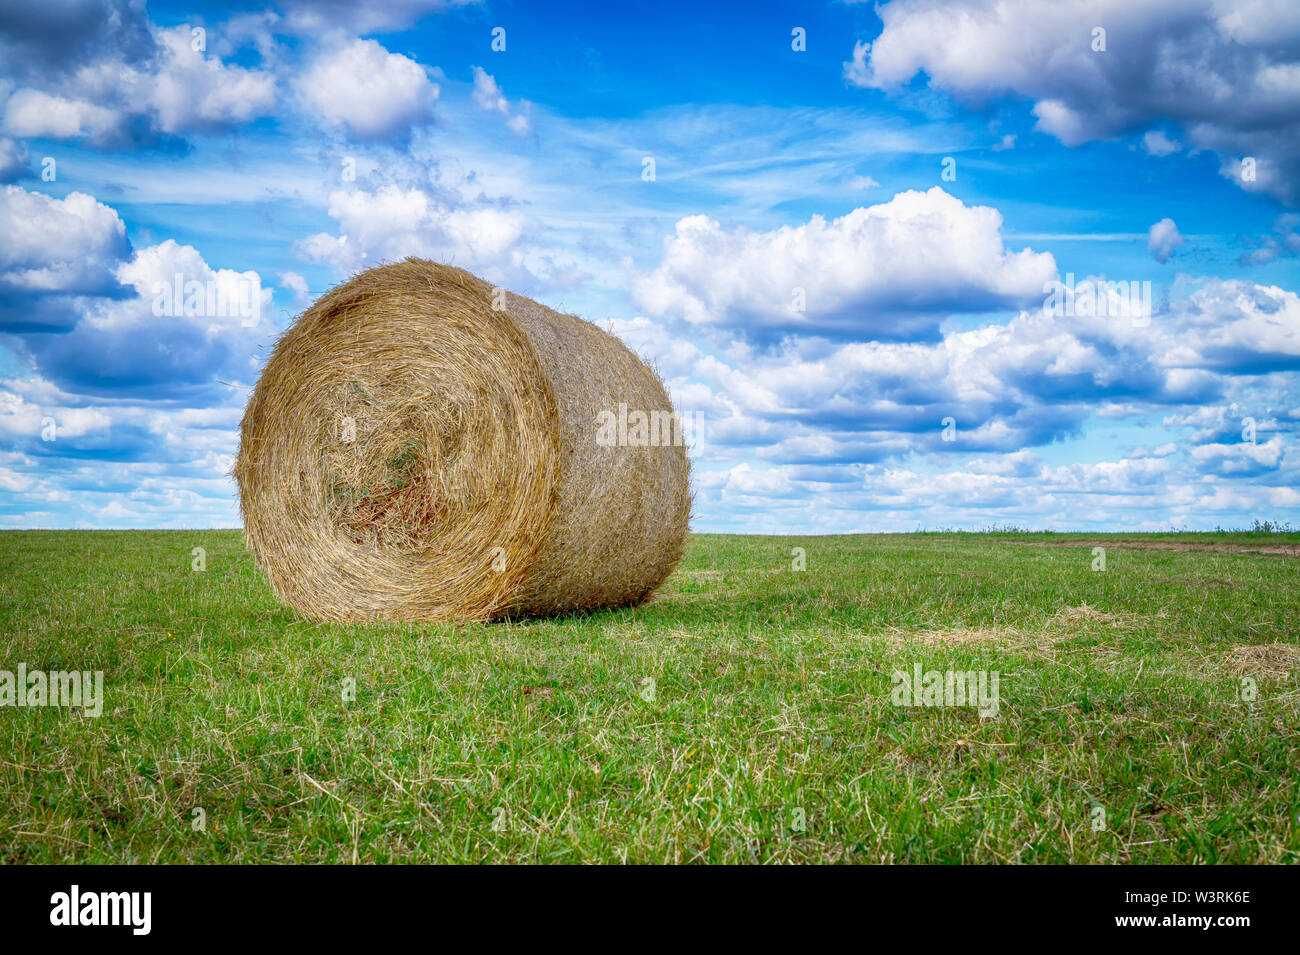 Circulaire fraîchement récolté balles de foin dans un champ ou le pâturage en été dans un angle faible vue sous un ciel nuageux ciel bleu d'un paysage agricole Banque D'Images